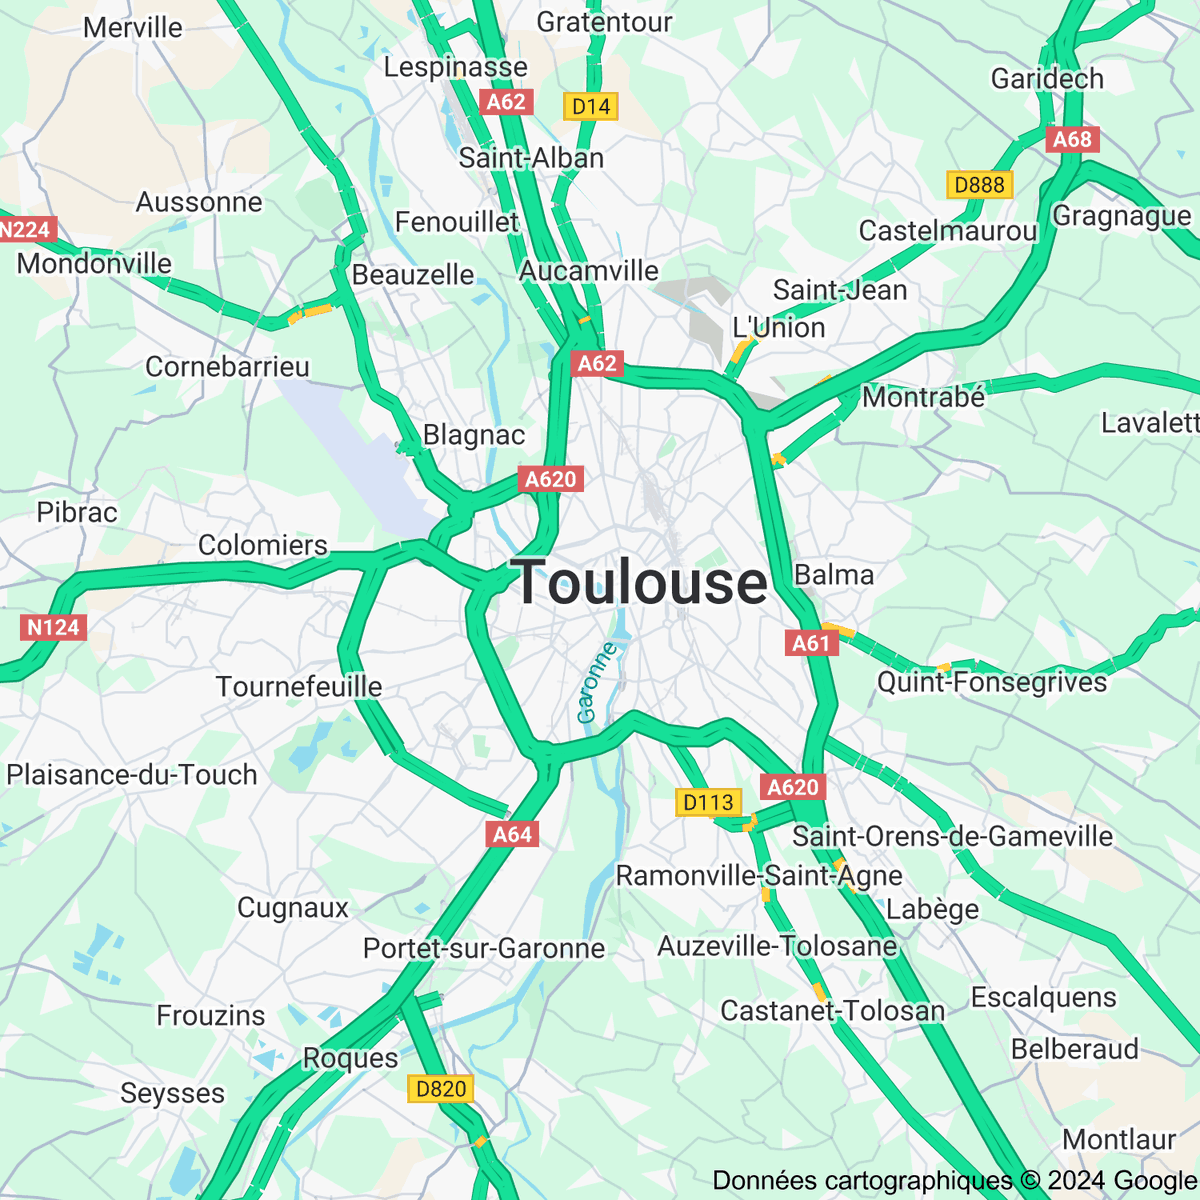 [FLASH 17:00] Trafic routier à Toulouse - toulousetrafic.com #Toulouse #ToulousePeriph #InfoTrafic